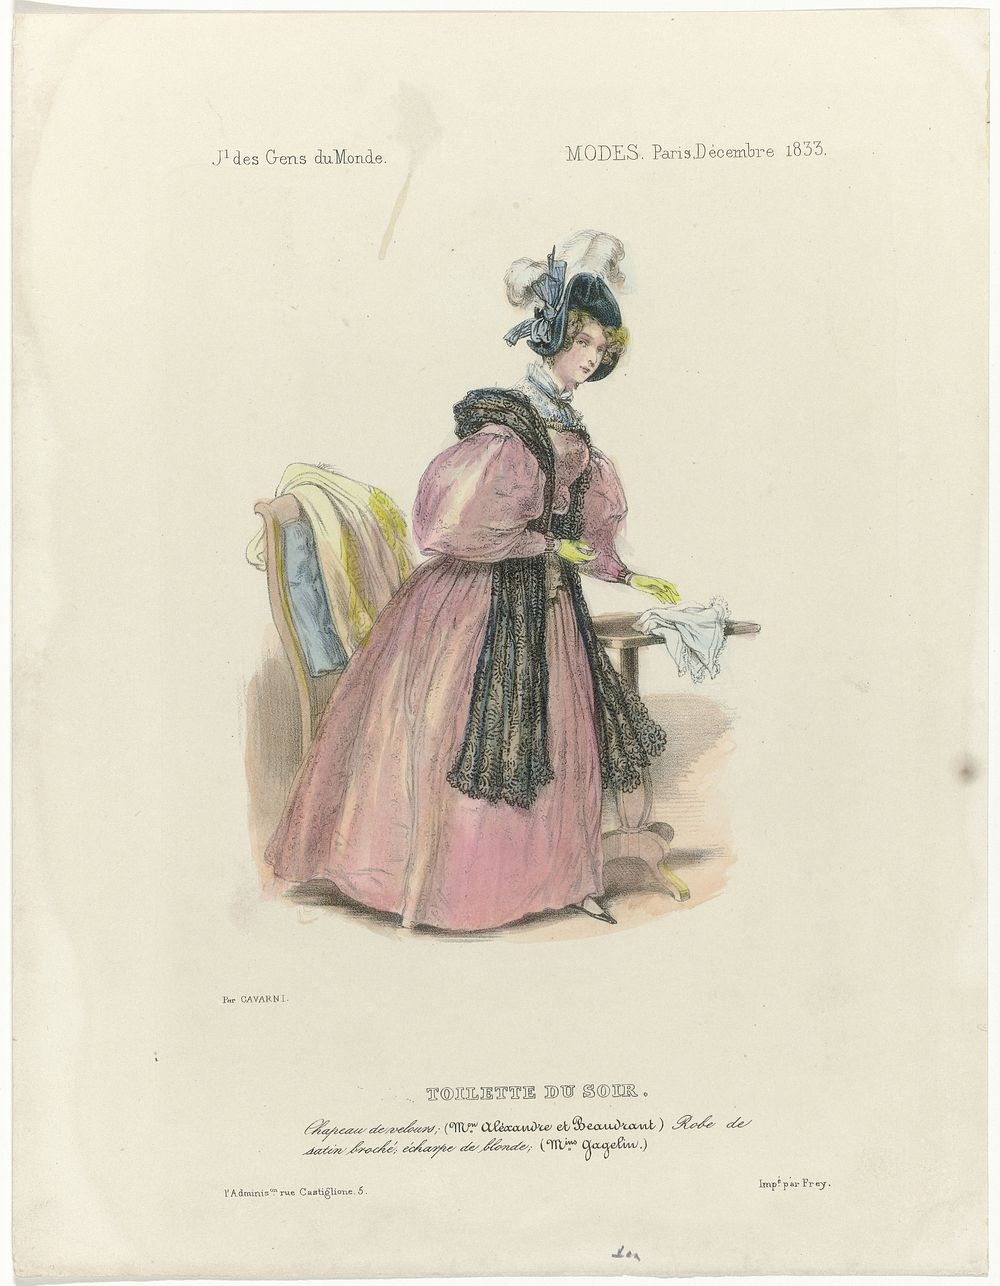 Journal des Gens du Monde, Modes Paris. décembre 1833 : Toilette du soir (...) (1833) by Paul Gavarni and Georges Jean Frey